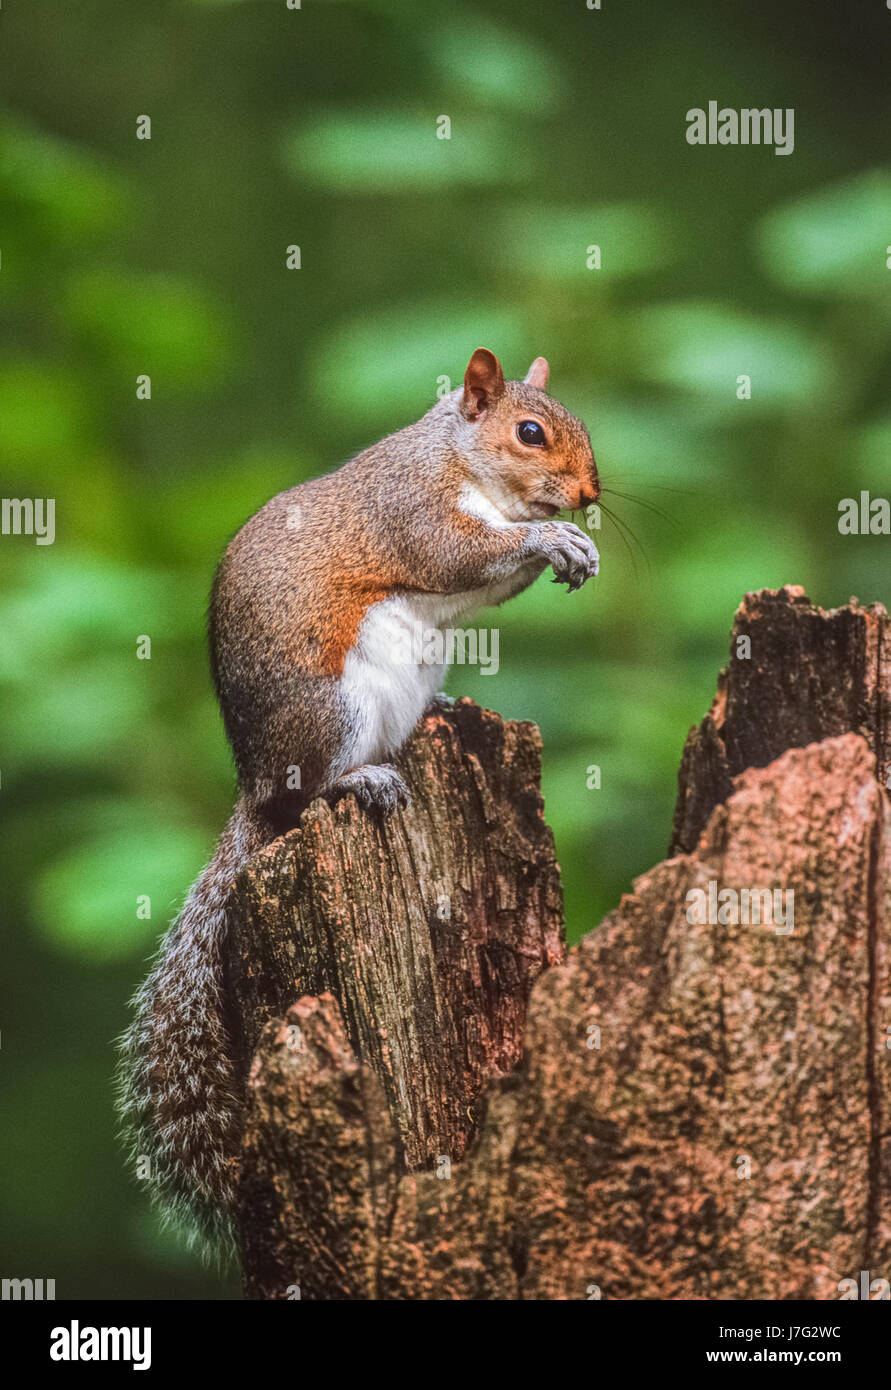 Graue Eichhörnchen, östlichen grauen Eichhörnchen oder graue Eichhörnchen (Sciurus carolinensis), Regent's Park, London, Großbritannien, Britische Inseln, Stockfoto